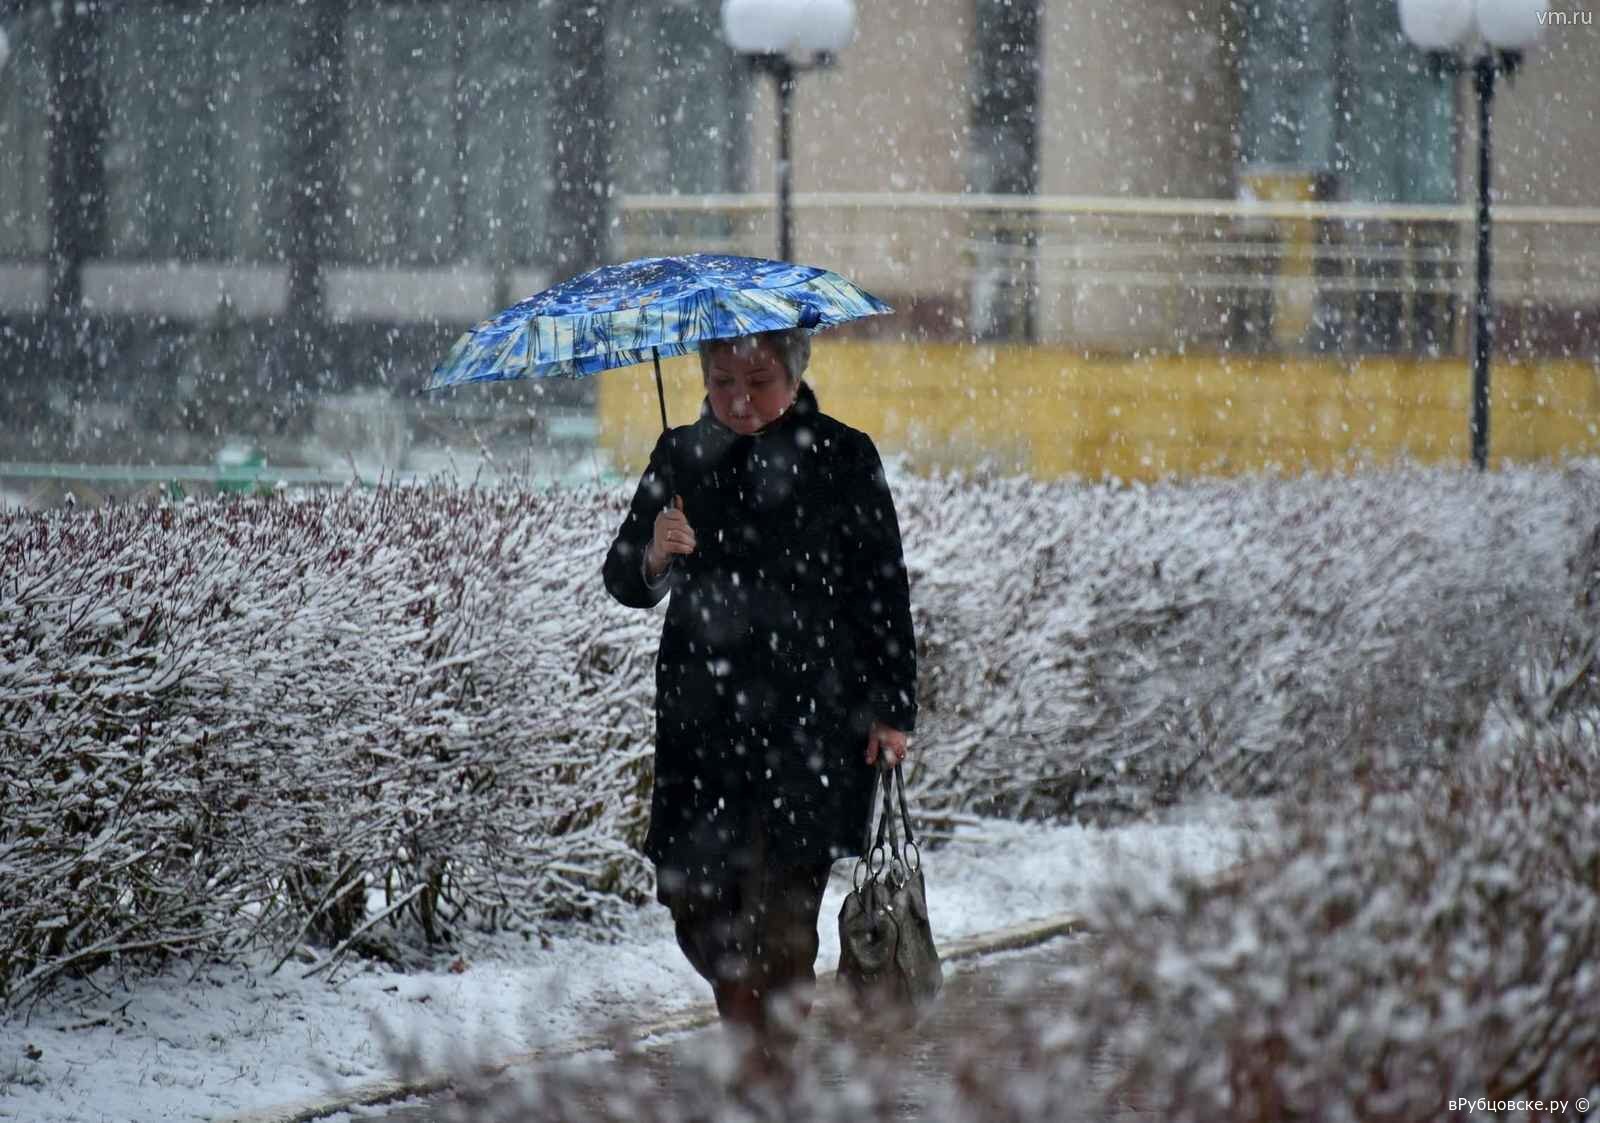 Сугробов дождь. Снег с дождем. Мокрый снег с дождем. Снег с дождем в городе. Дождь со снегом в Москве.